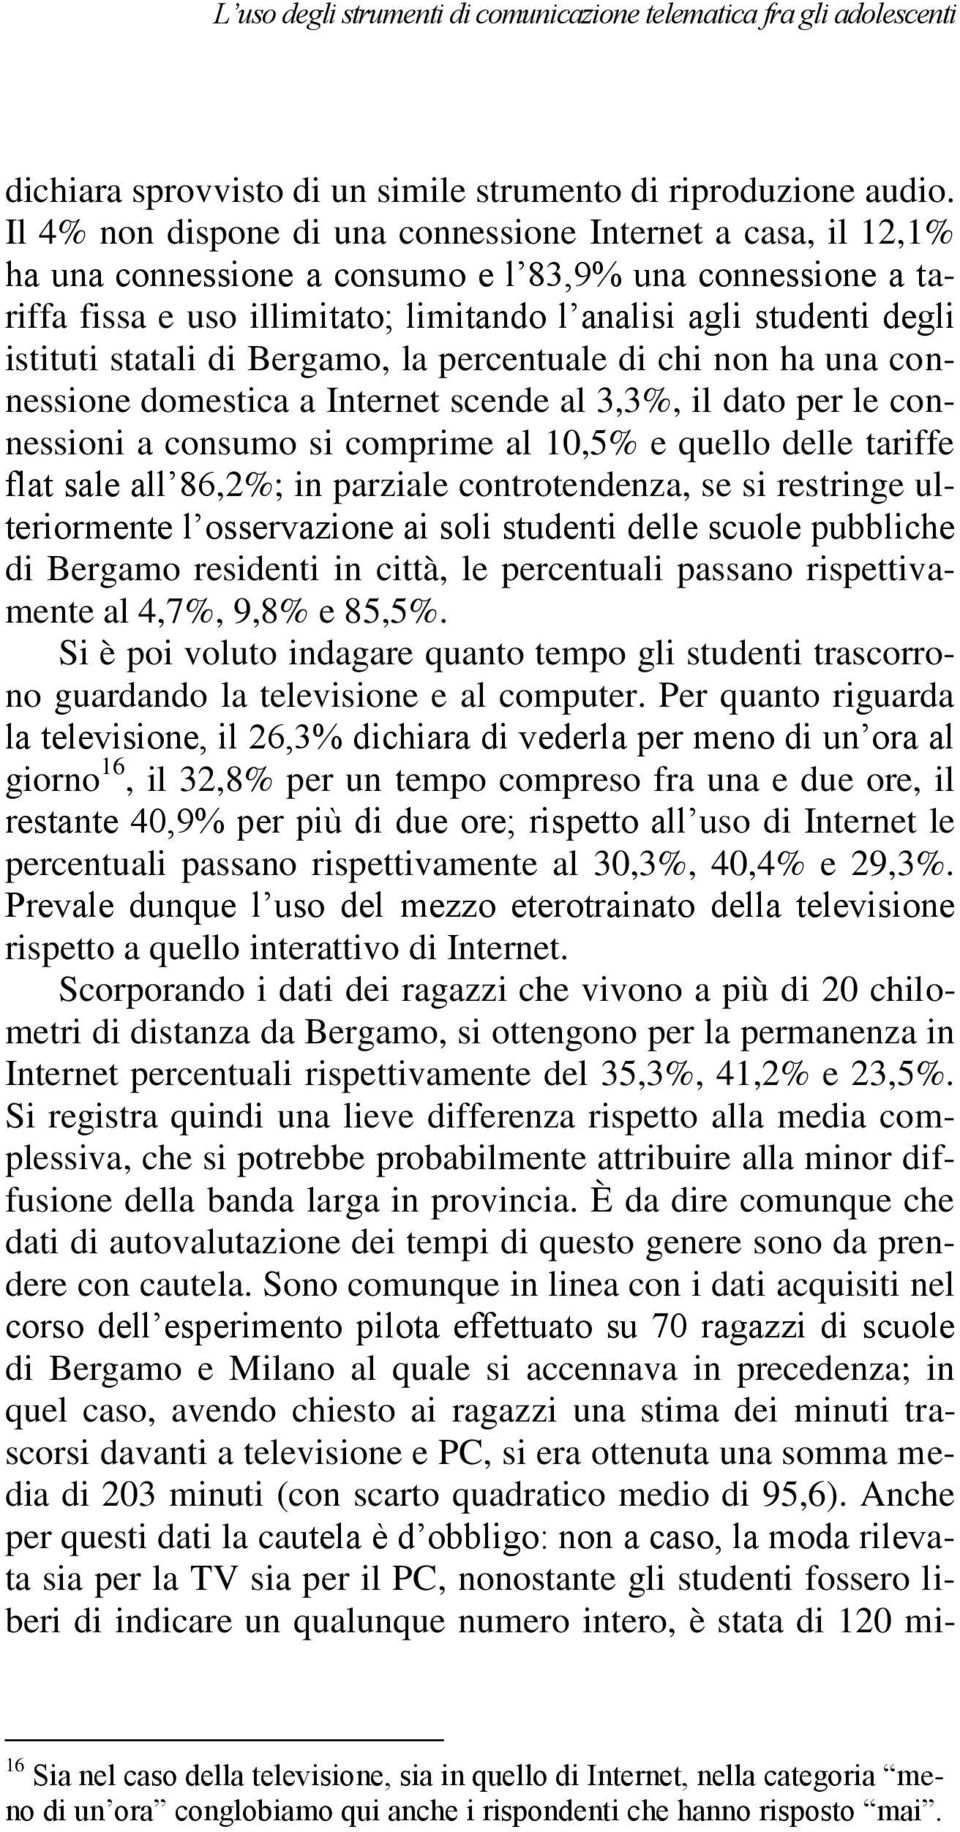 istituti statali di Bergamo, la percentuale di chi non ha una connessione domestica a Internet scende al 3,3%, il dato per le connessioni a consumo si comprime al 10,5% e quello delle tariffe flat